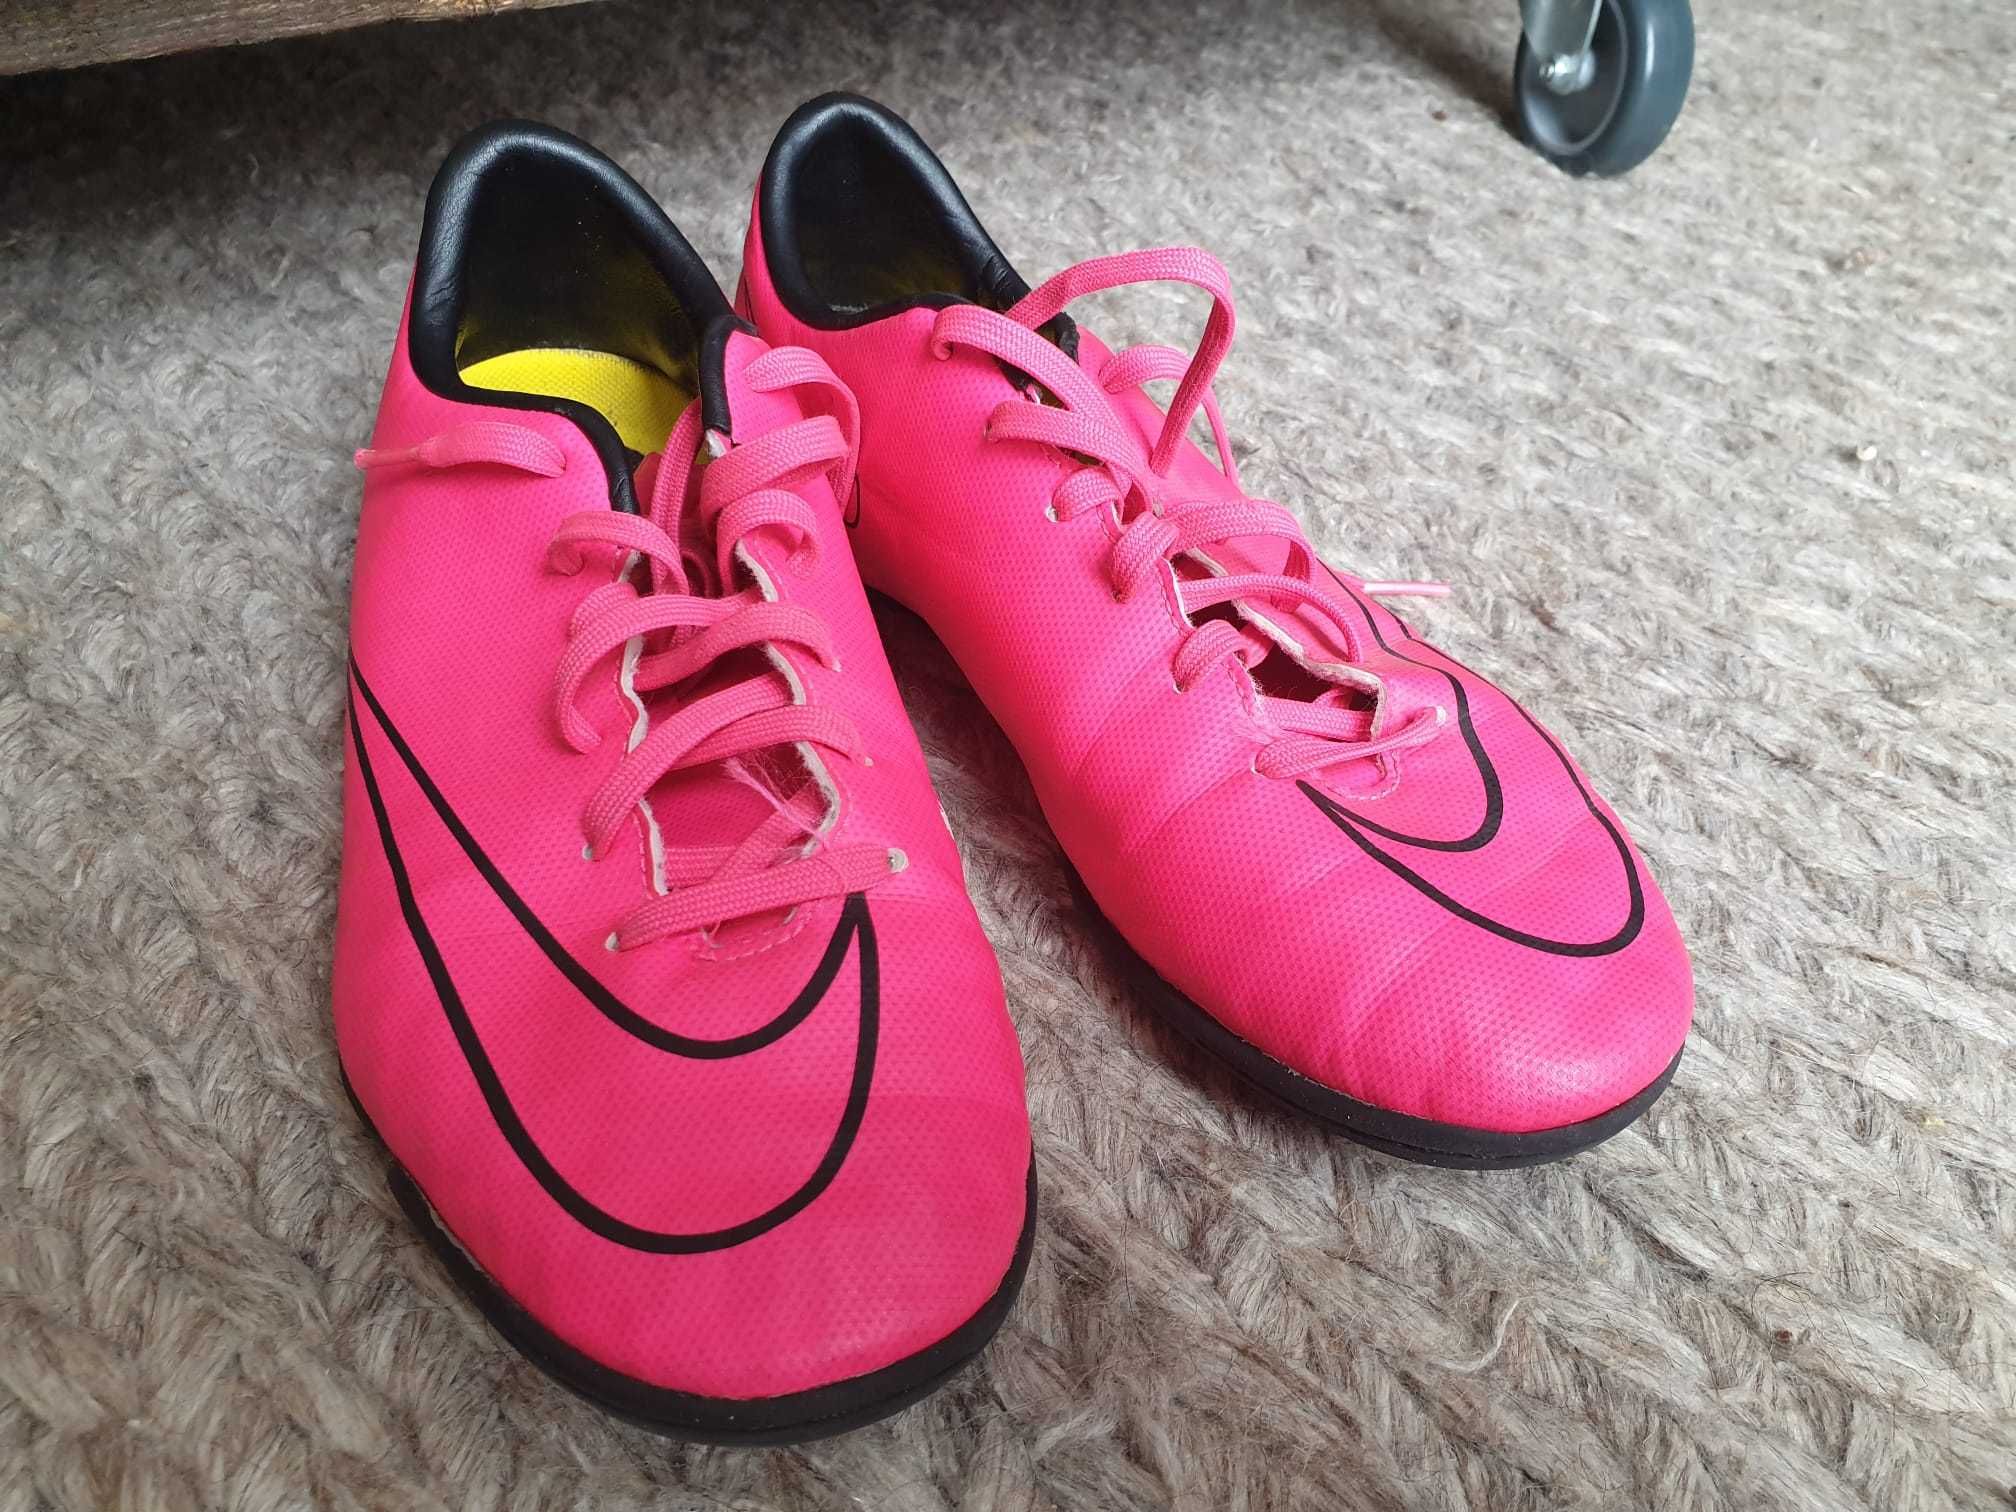 Buty Nike Mercurial halówki różowe męskie damskie r. 38.5